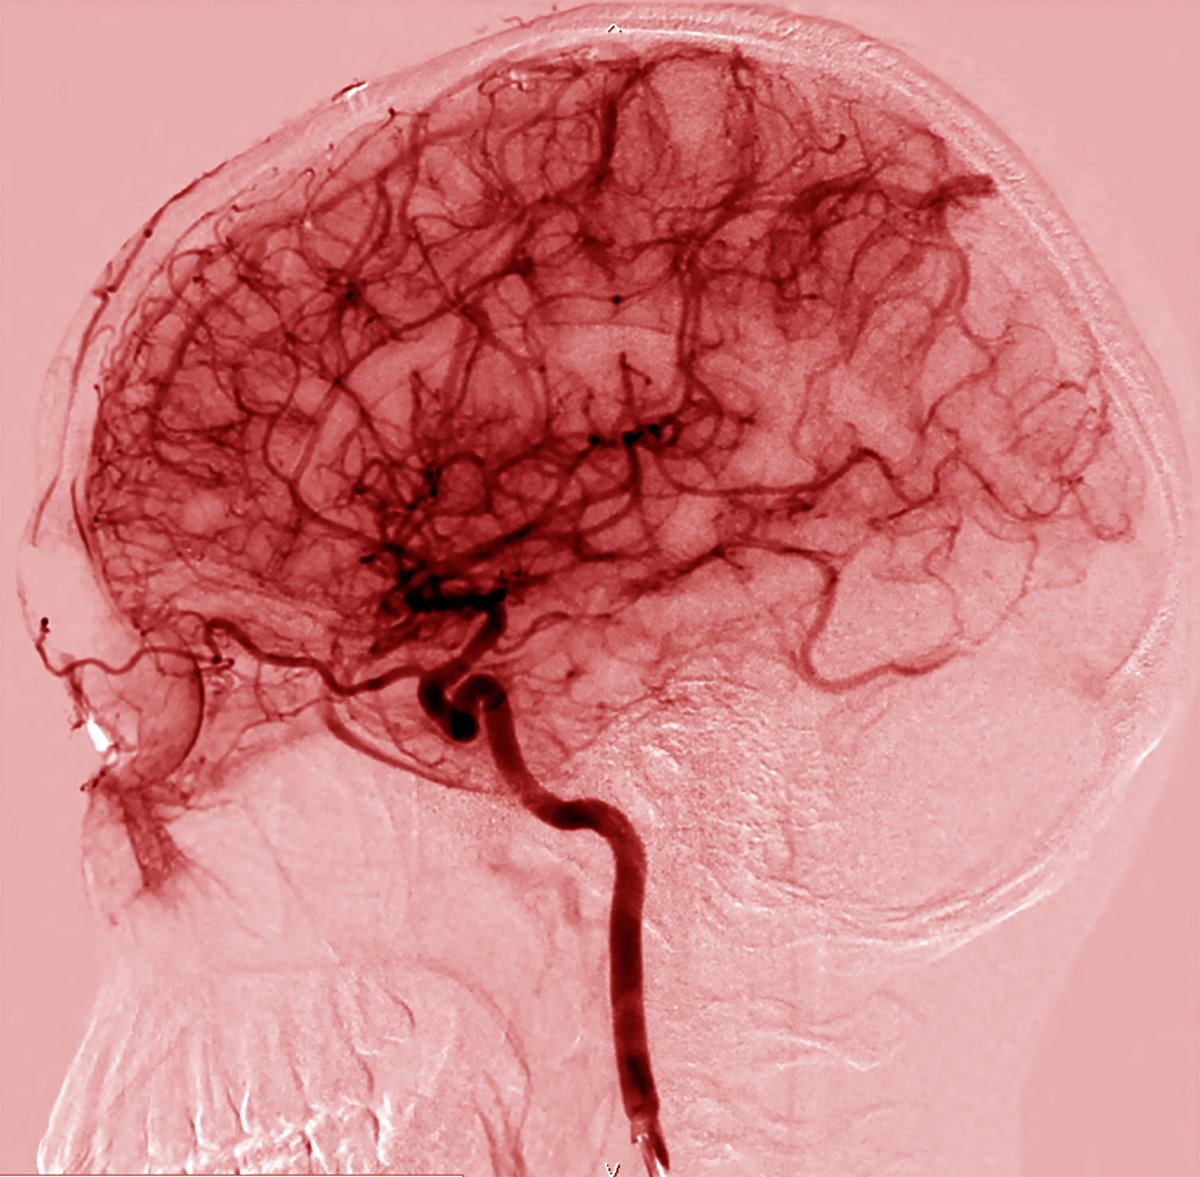 Esta é uma imagem dos muitos vasos sanguíneos do cérebro. As células que revestem estes vasos criam a barreira hemato-encefálica.   